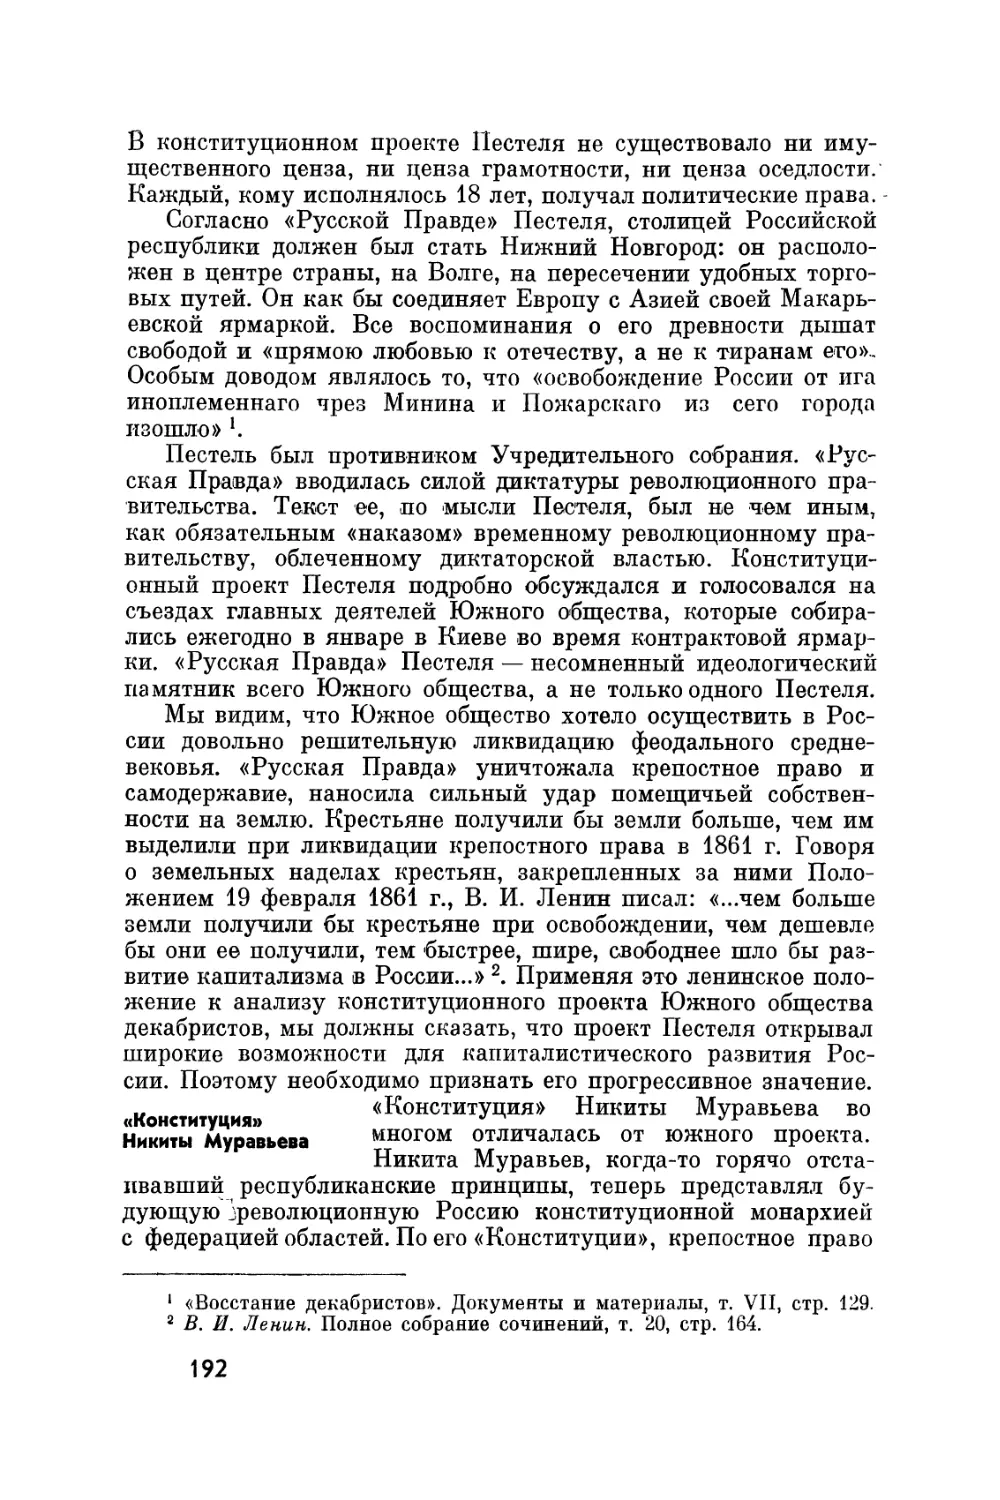 «Конституция» Никиты Муравьева